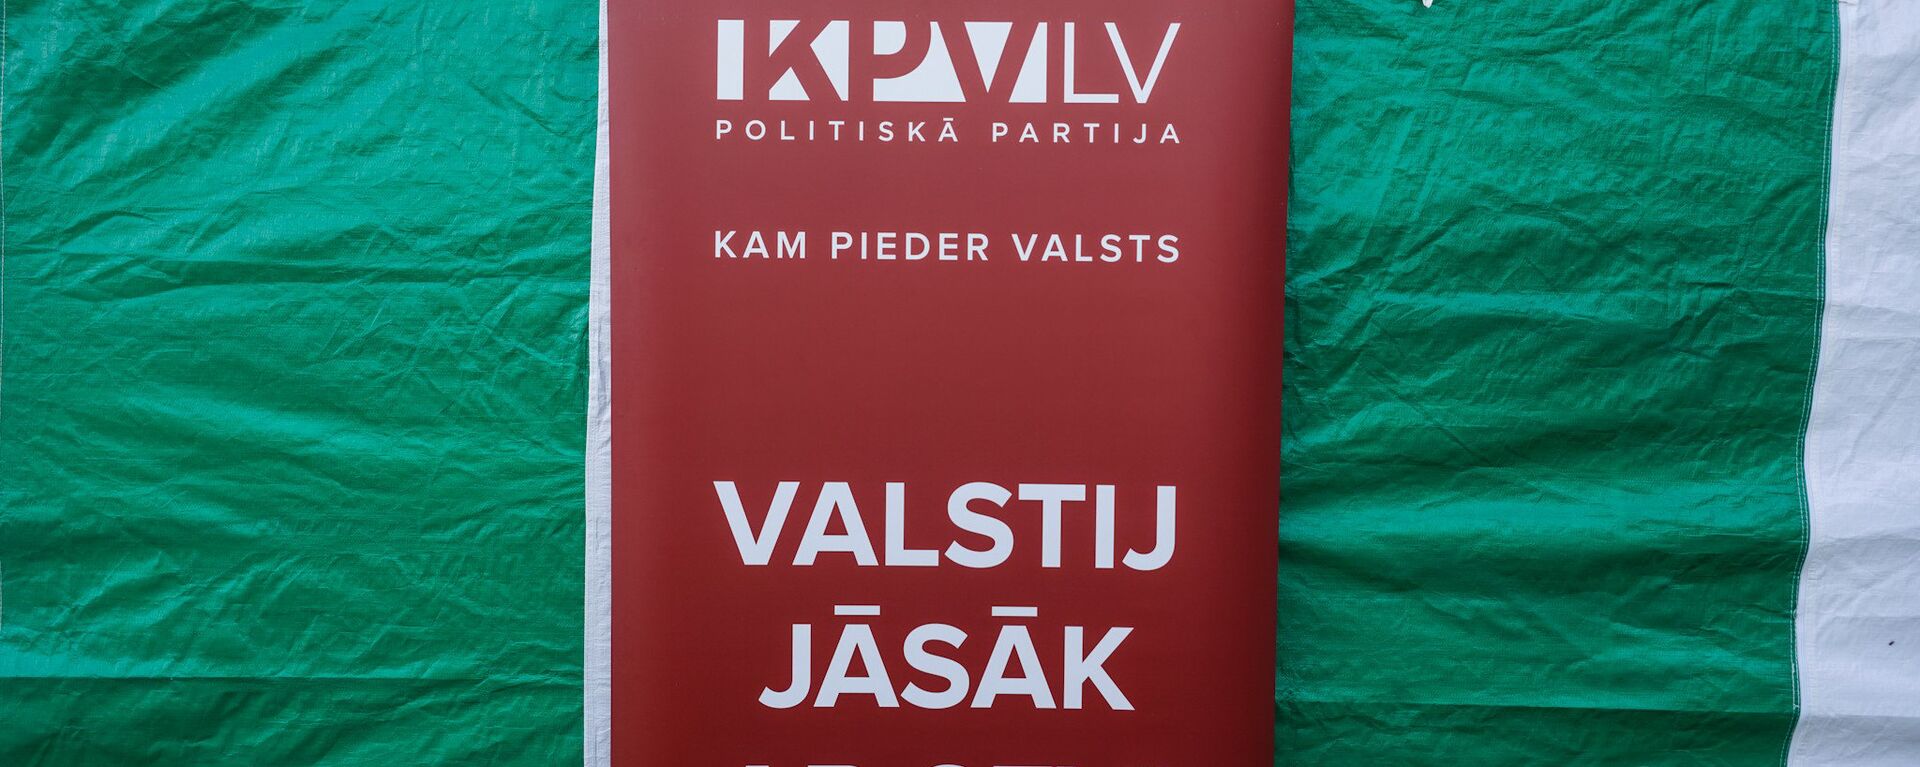 Политическая партия KPV LV - Sputnik Латвия, 1920, 14.05.2021